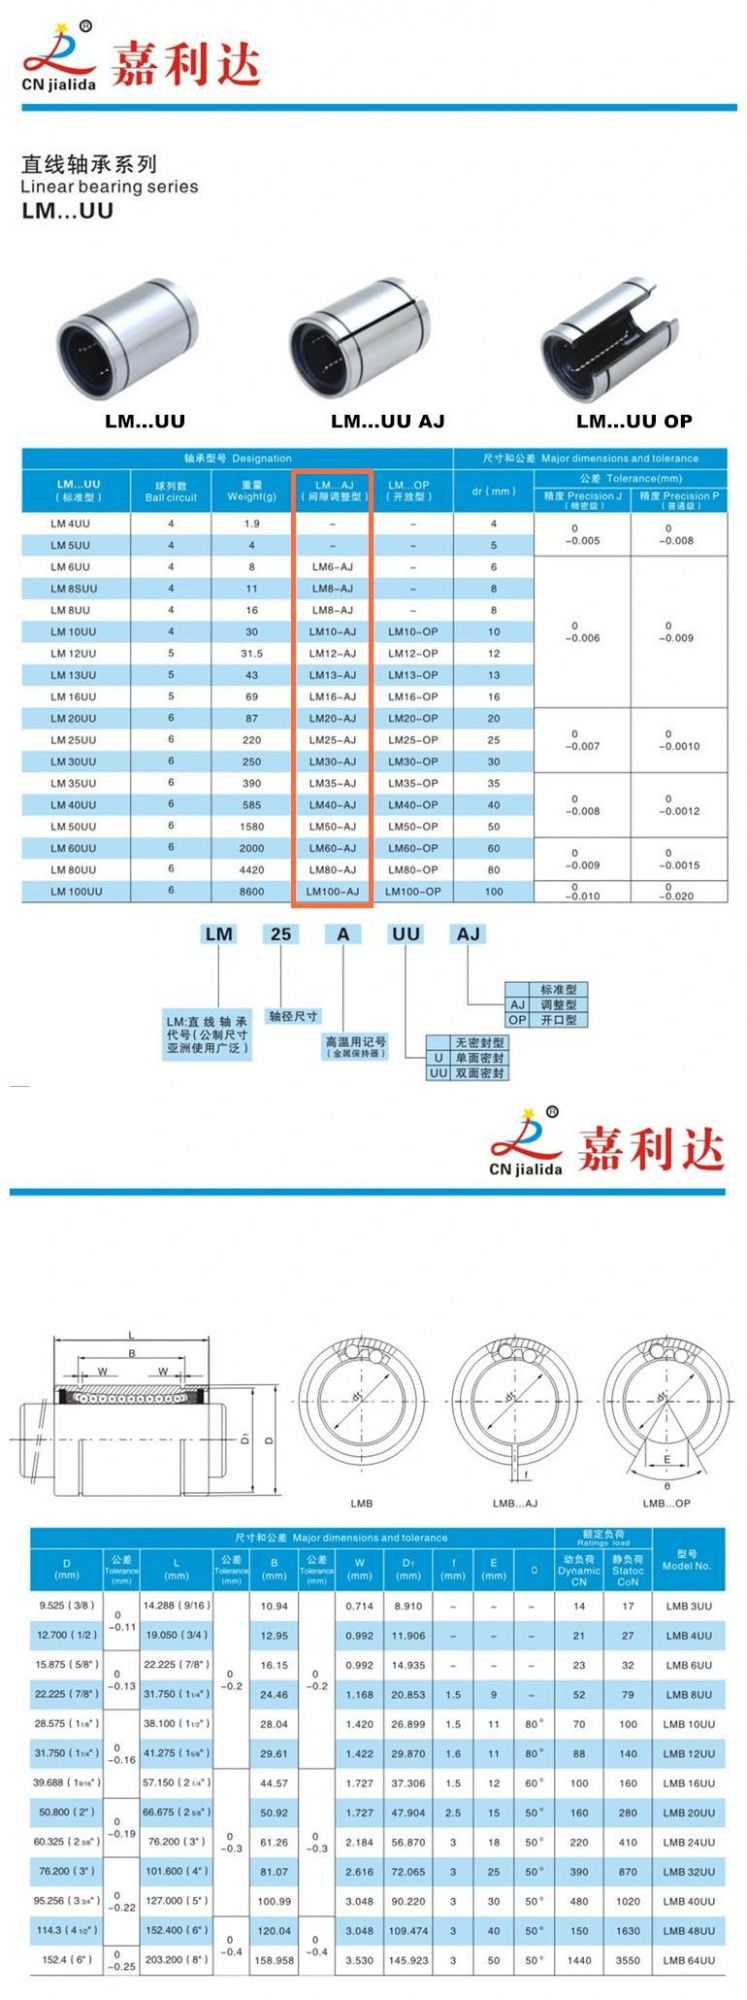 China Bearing Manufacturer Linear Slide Bearing Adjustable Type Lm6uu Aj